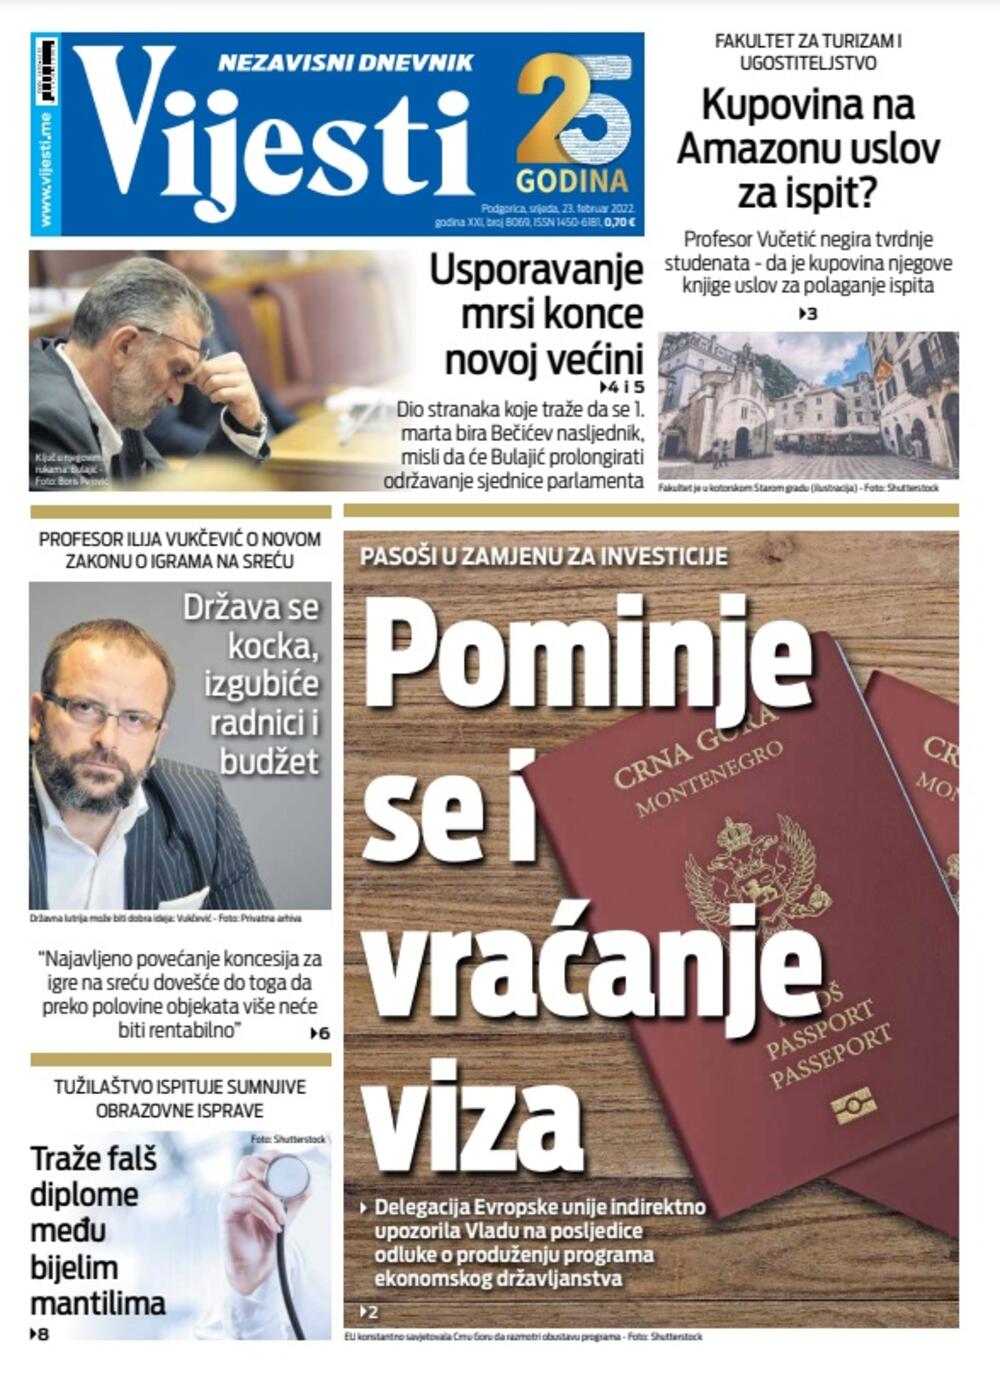 Naslovna strana "Vijesti" za 23. februar 2022., Foto: Vijesti